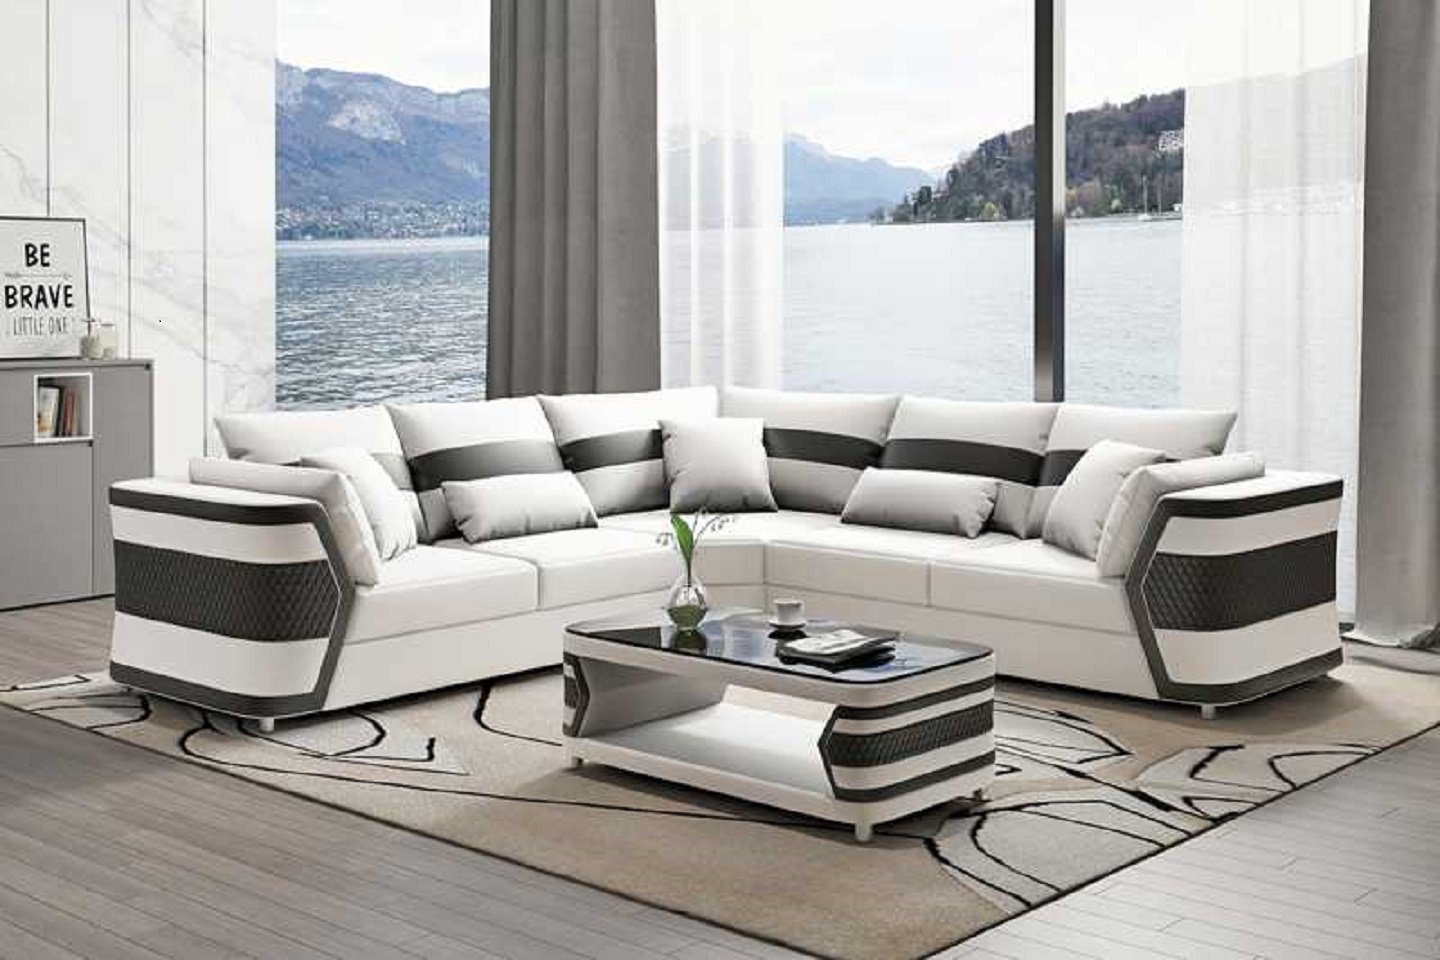 JVmoebel Ecksofa Luxus Ledersofa Ecksofa Couch Sofa Wohnzimmer Modern, 3 Teile, Made in Europe Weiß